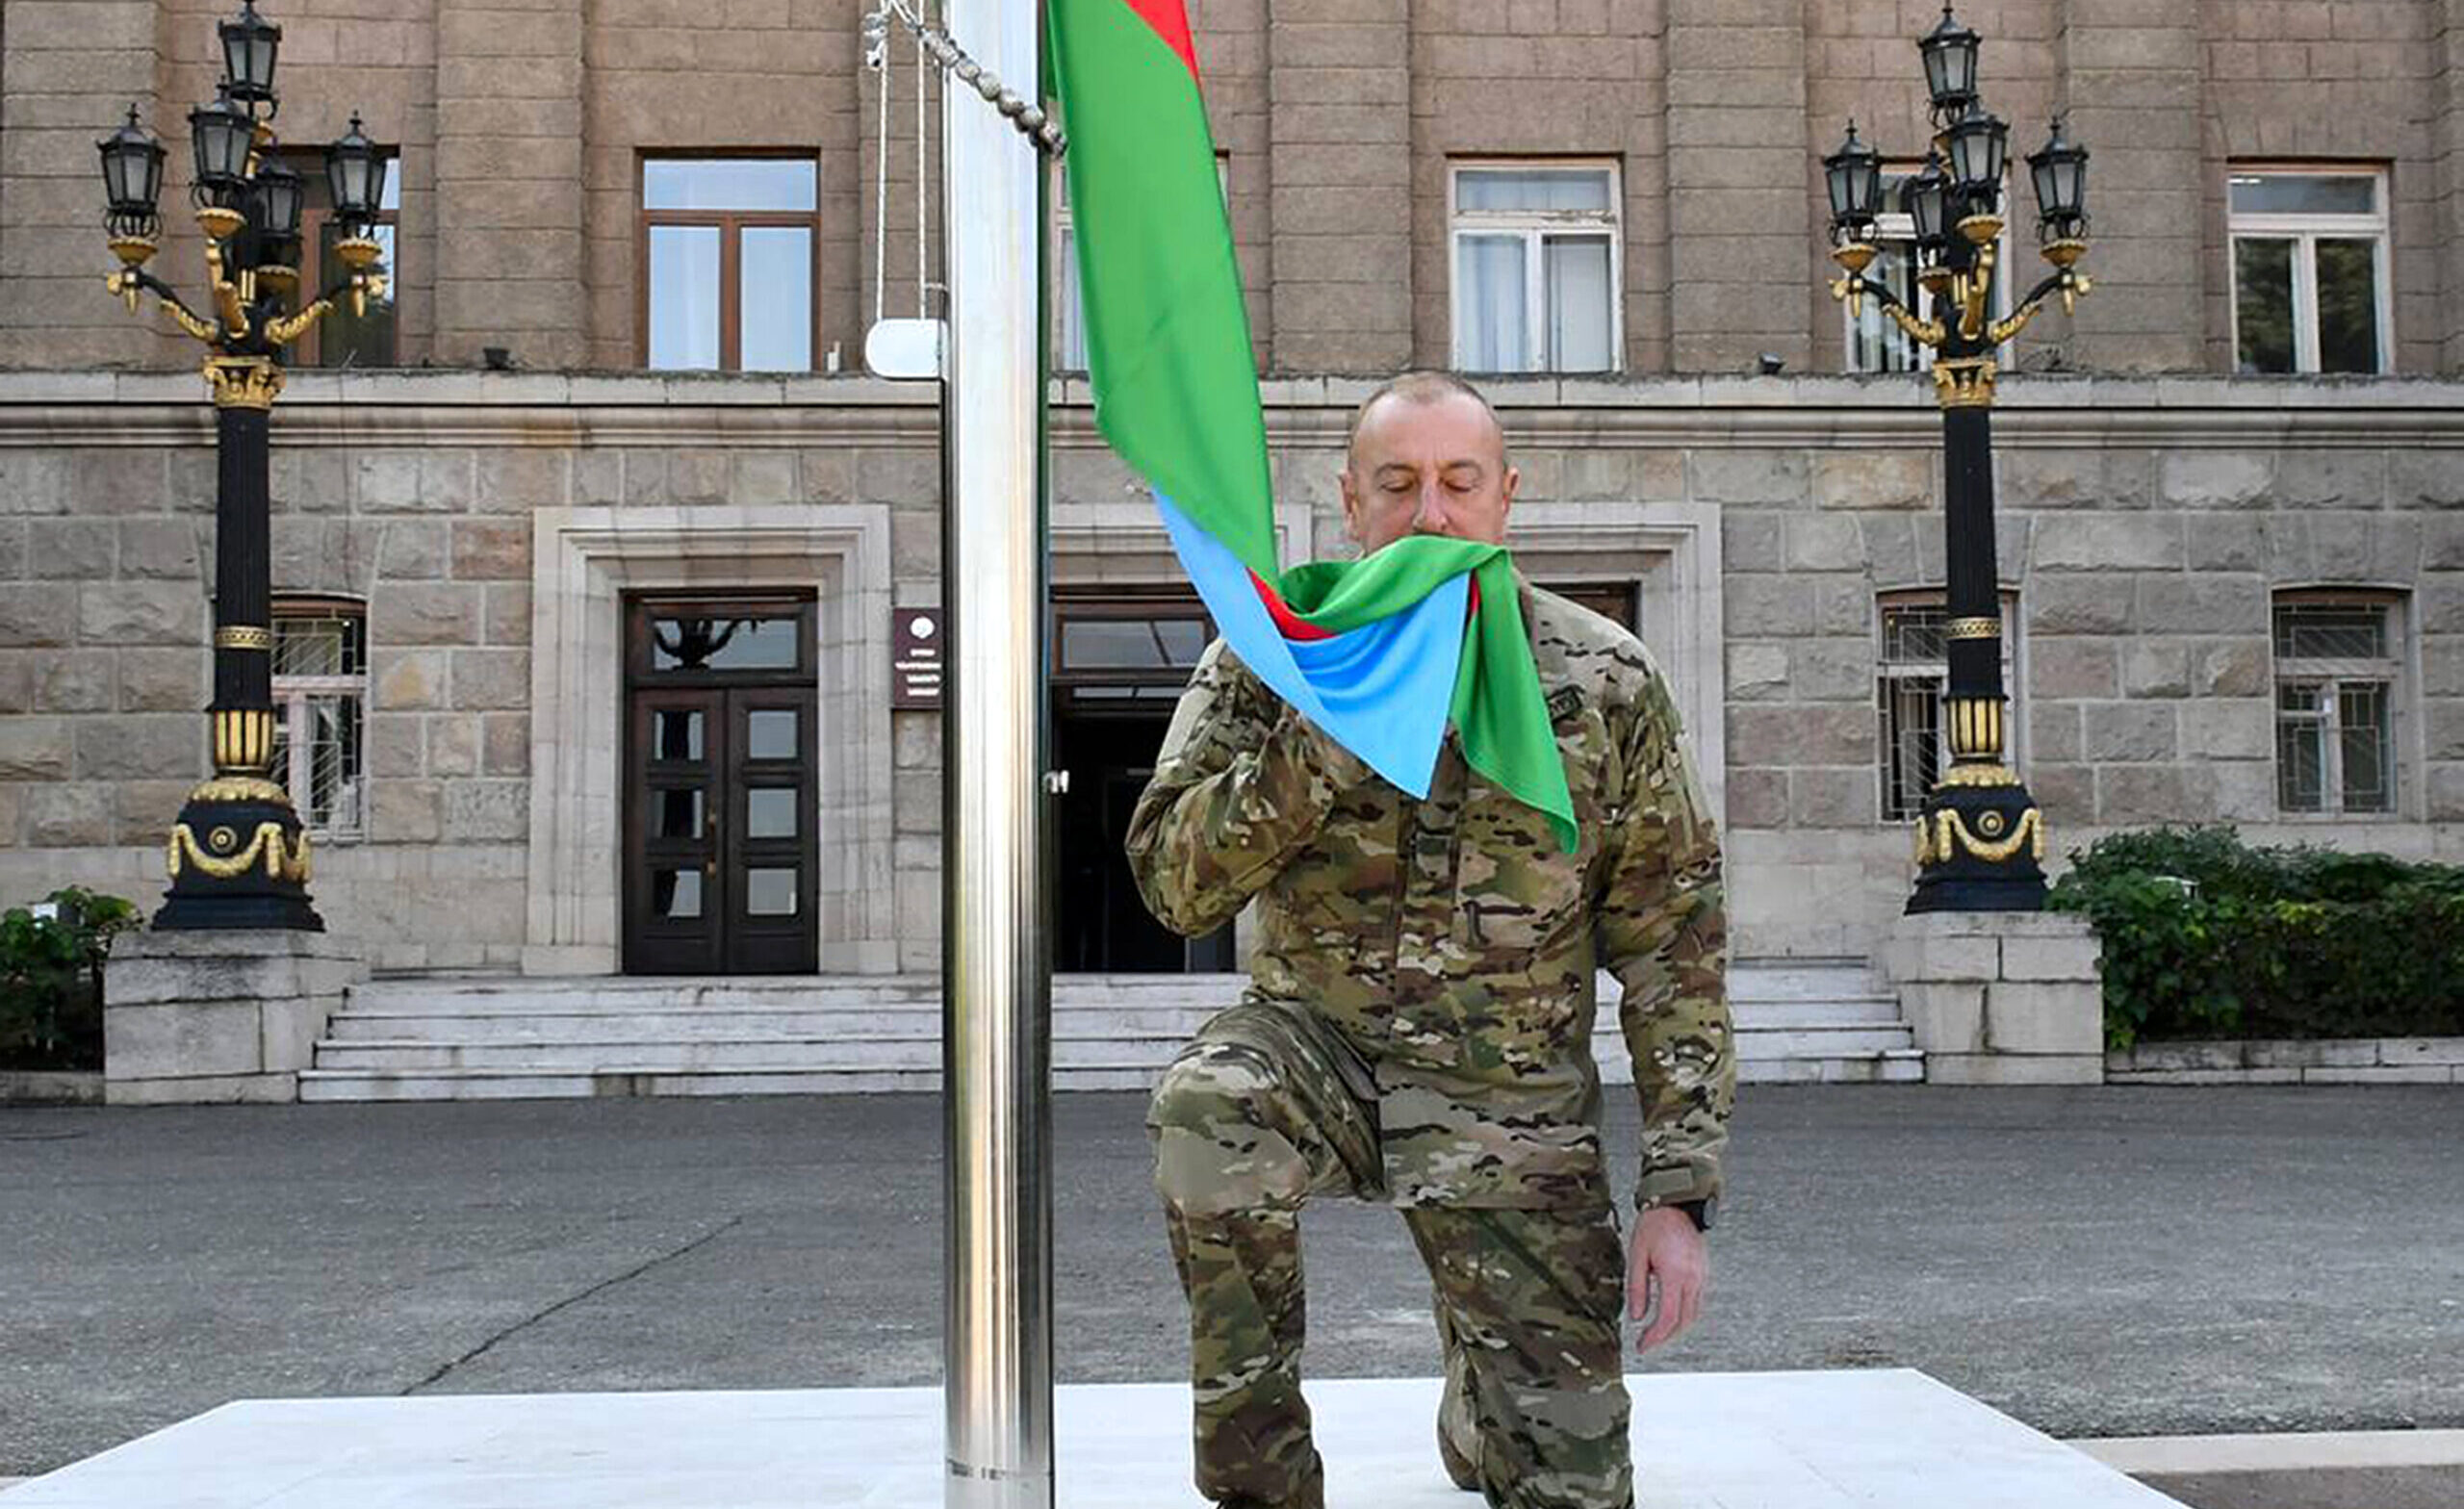 Ο πρόεδρος του Αζερμπαϊτζάν ύψωσε τη σημαία της χώρας στην πρωτεύουσα του Ναγκόρνο Καραμπάχ